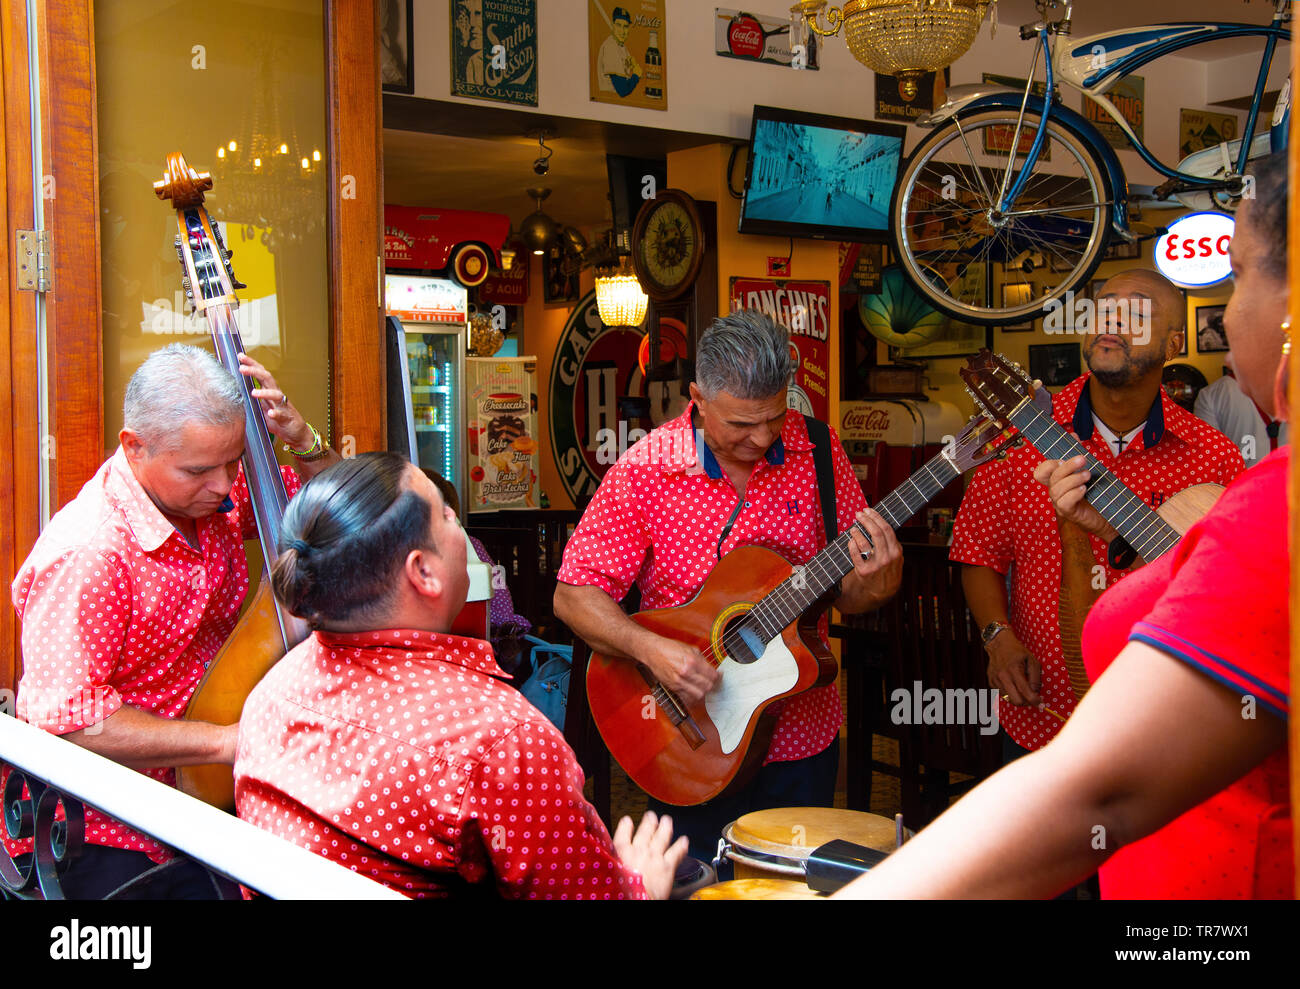 Band spielt Musik Straße in einer offenen, beidseitigen Restaurant neben der Plaza Vieja, Havanna, Kuba, Karibik Stockfoto